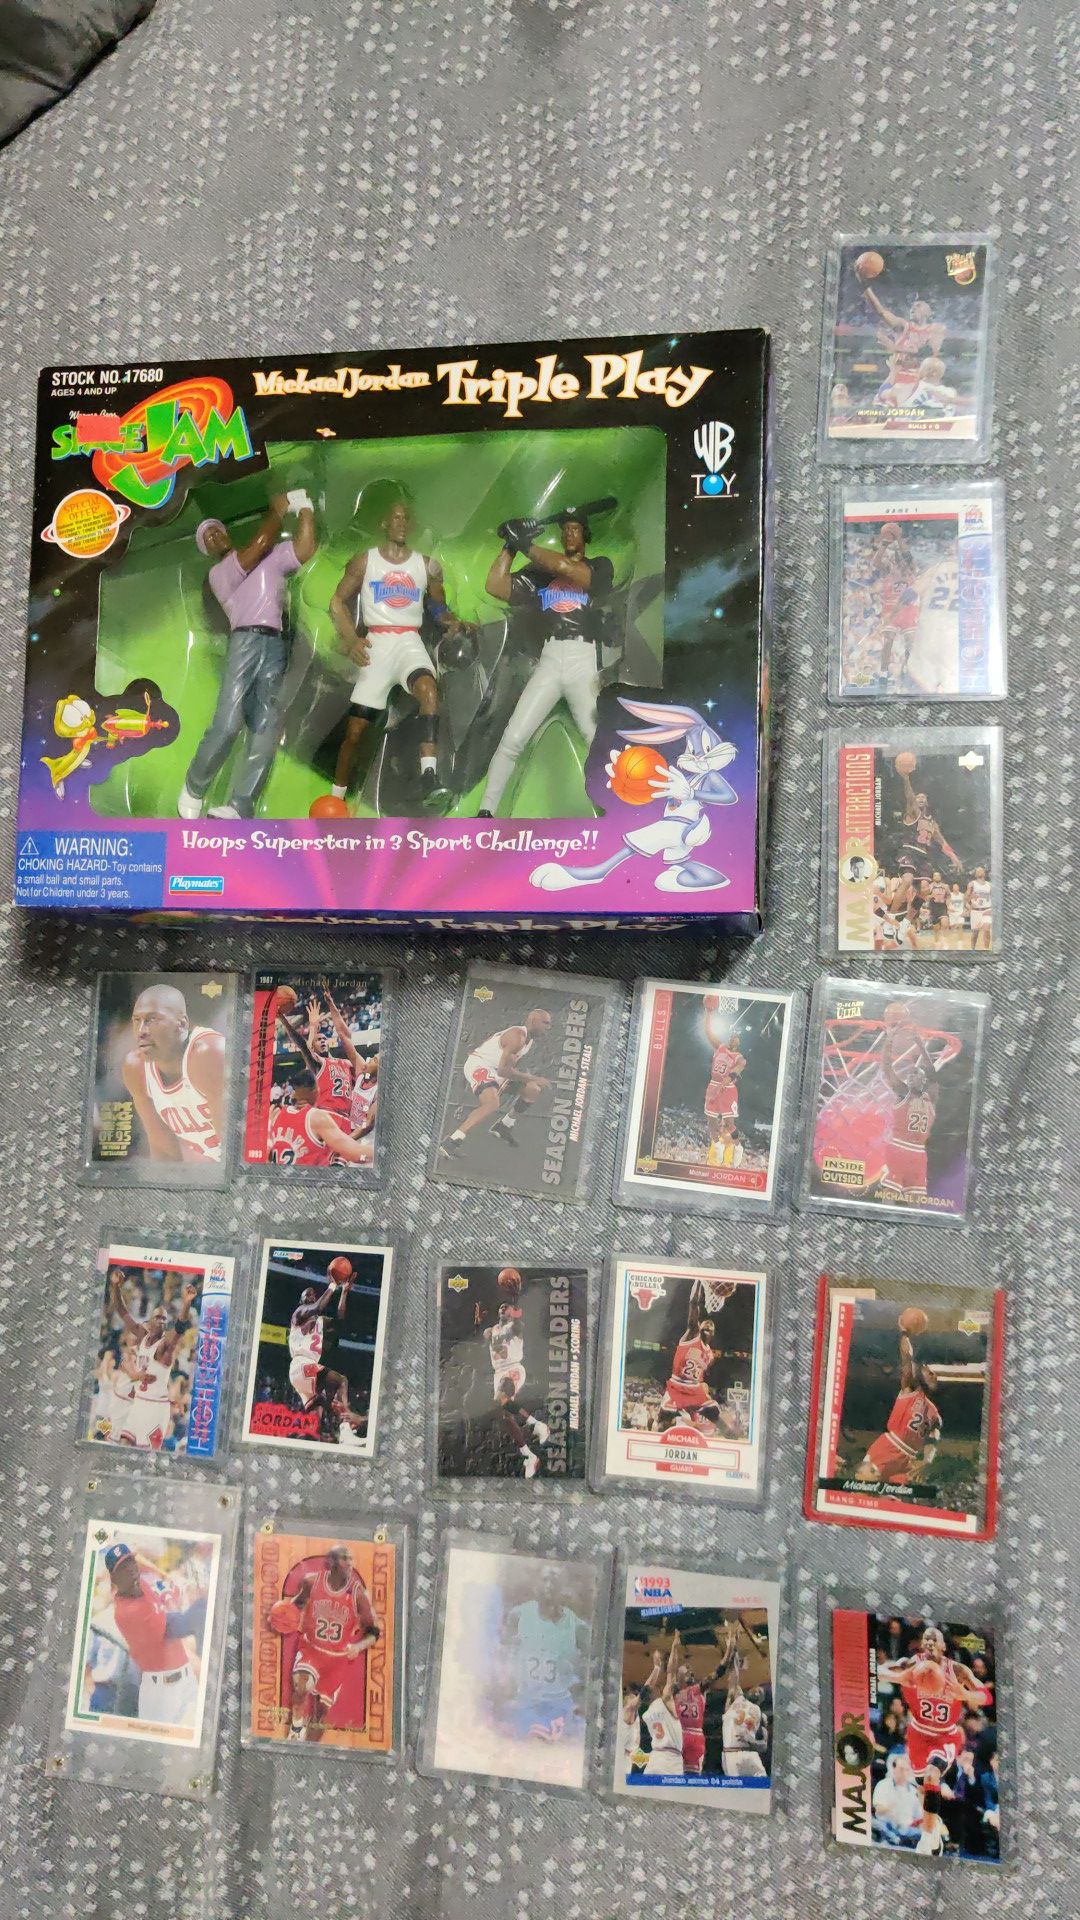 Michael Jordan lot: 21 sports cards(3 doubles), Space Jam Triple play action figure